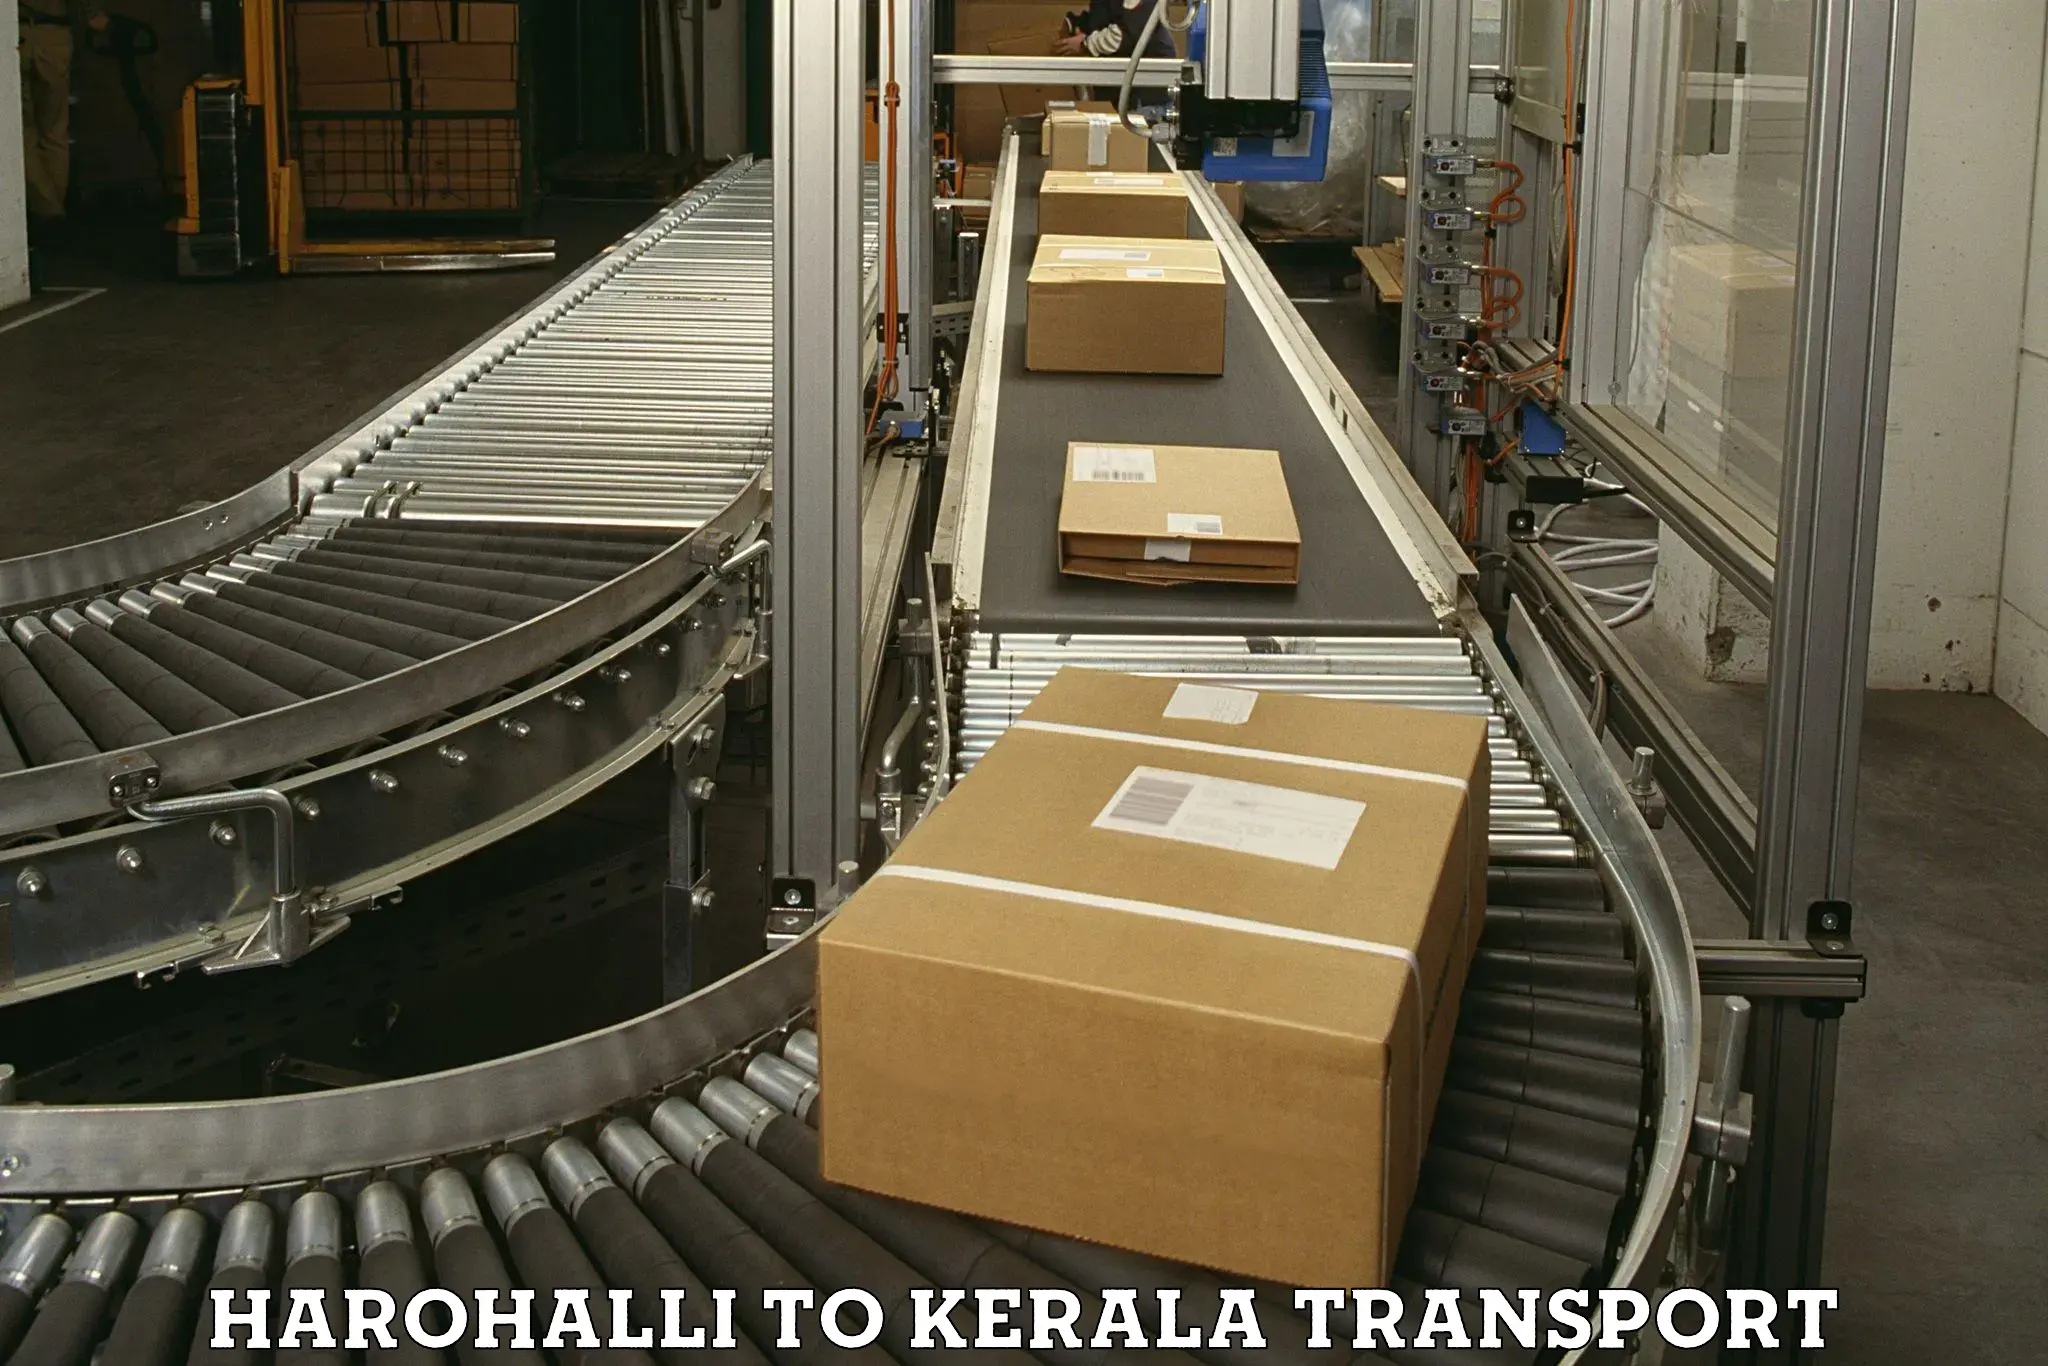 Transport in sharing Harohalli to Kuchi